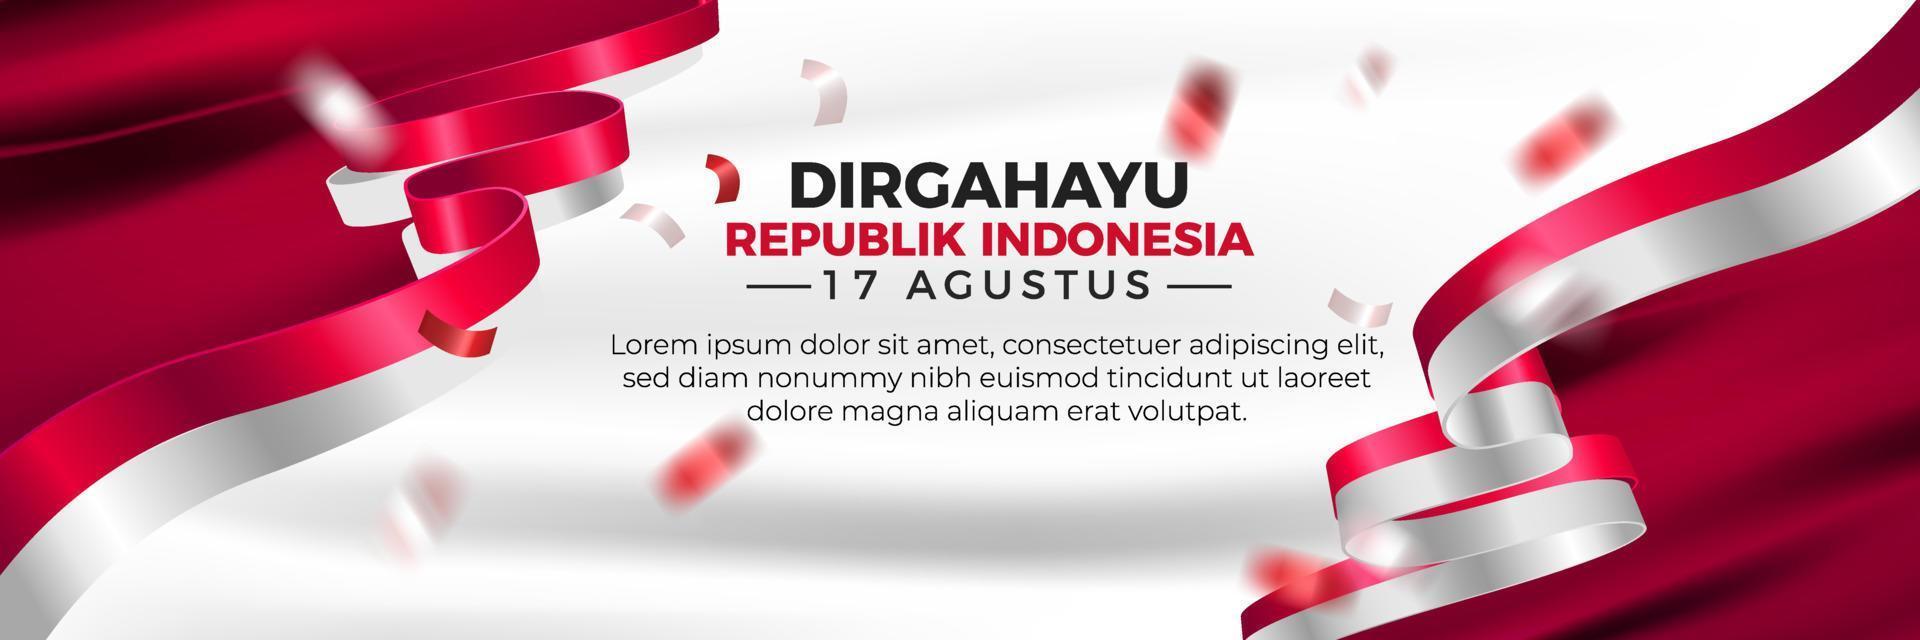 dirgahayu republik indonesië landschap banner sjabloon vector